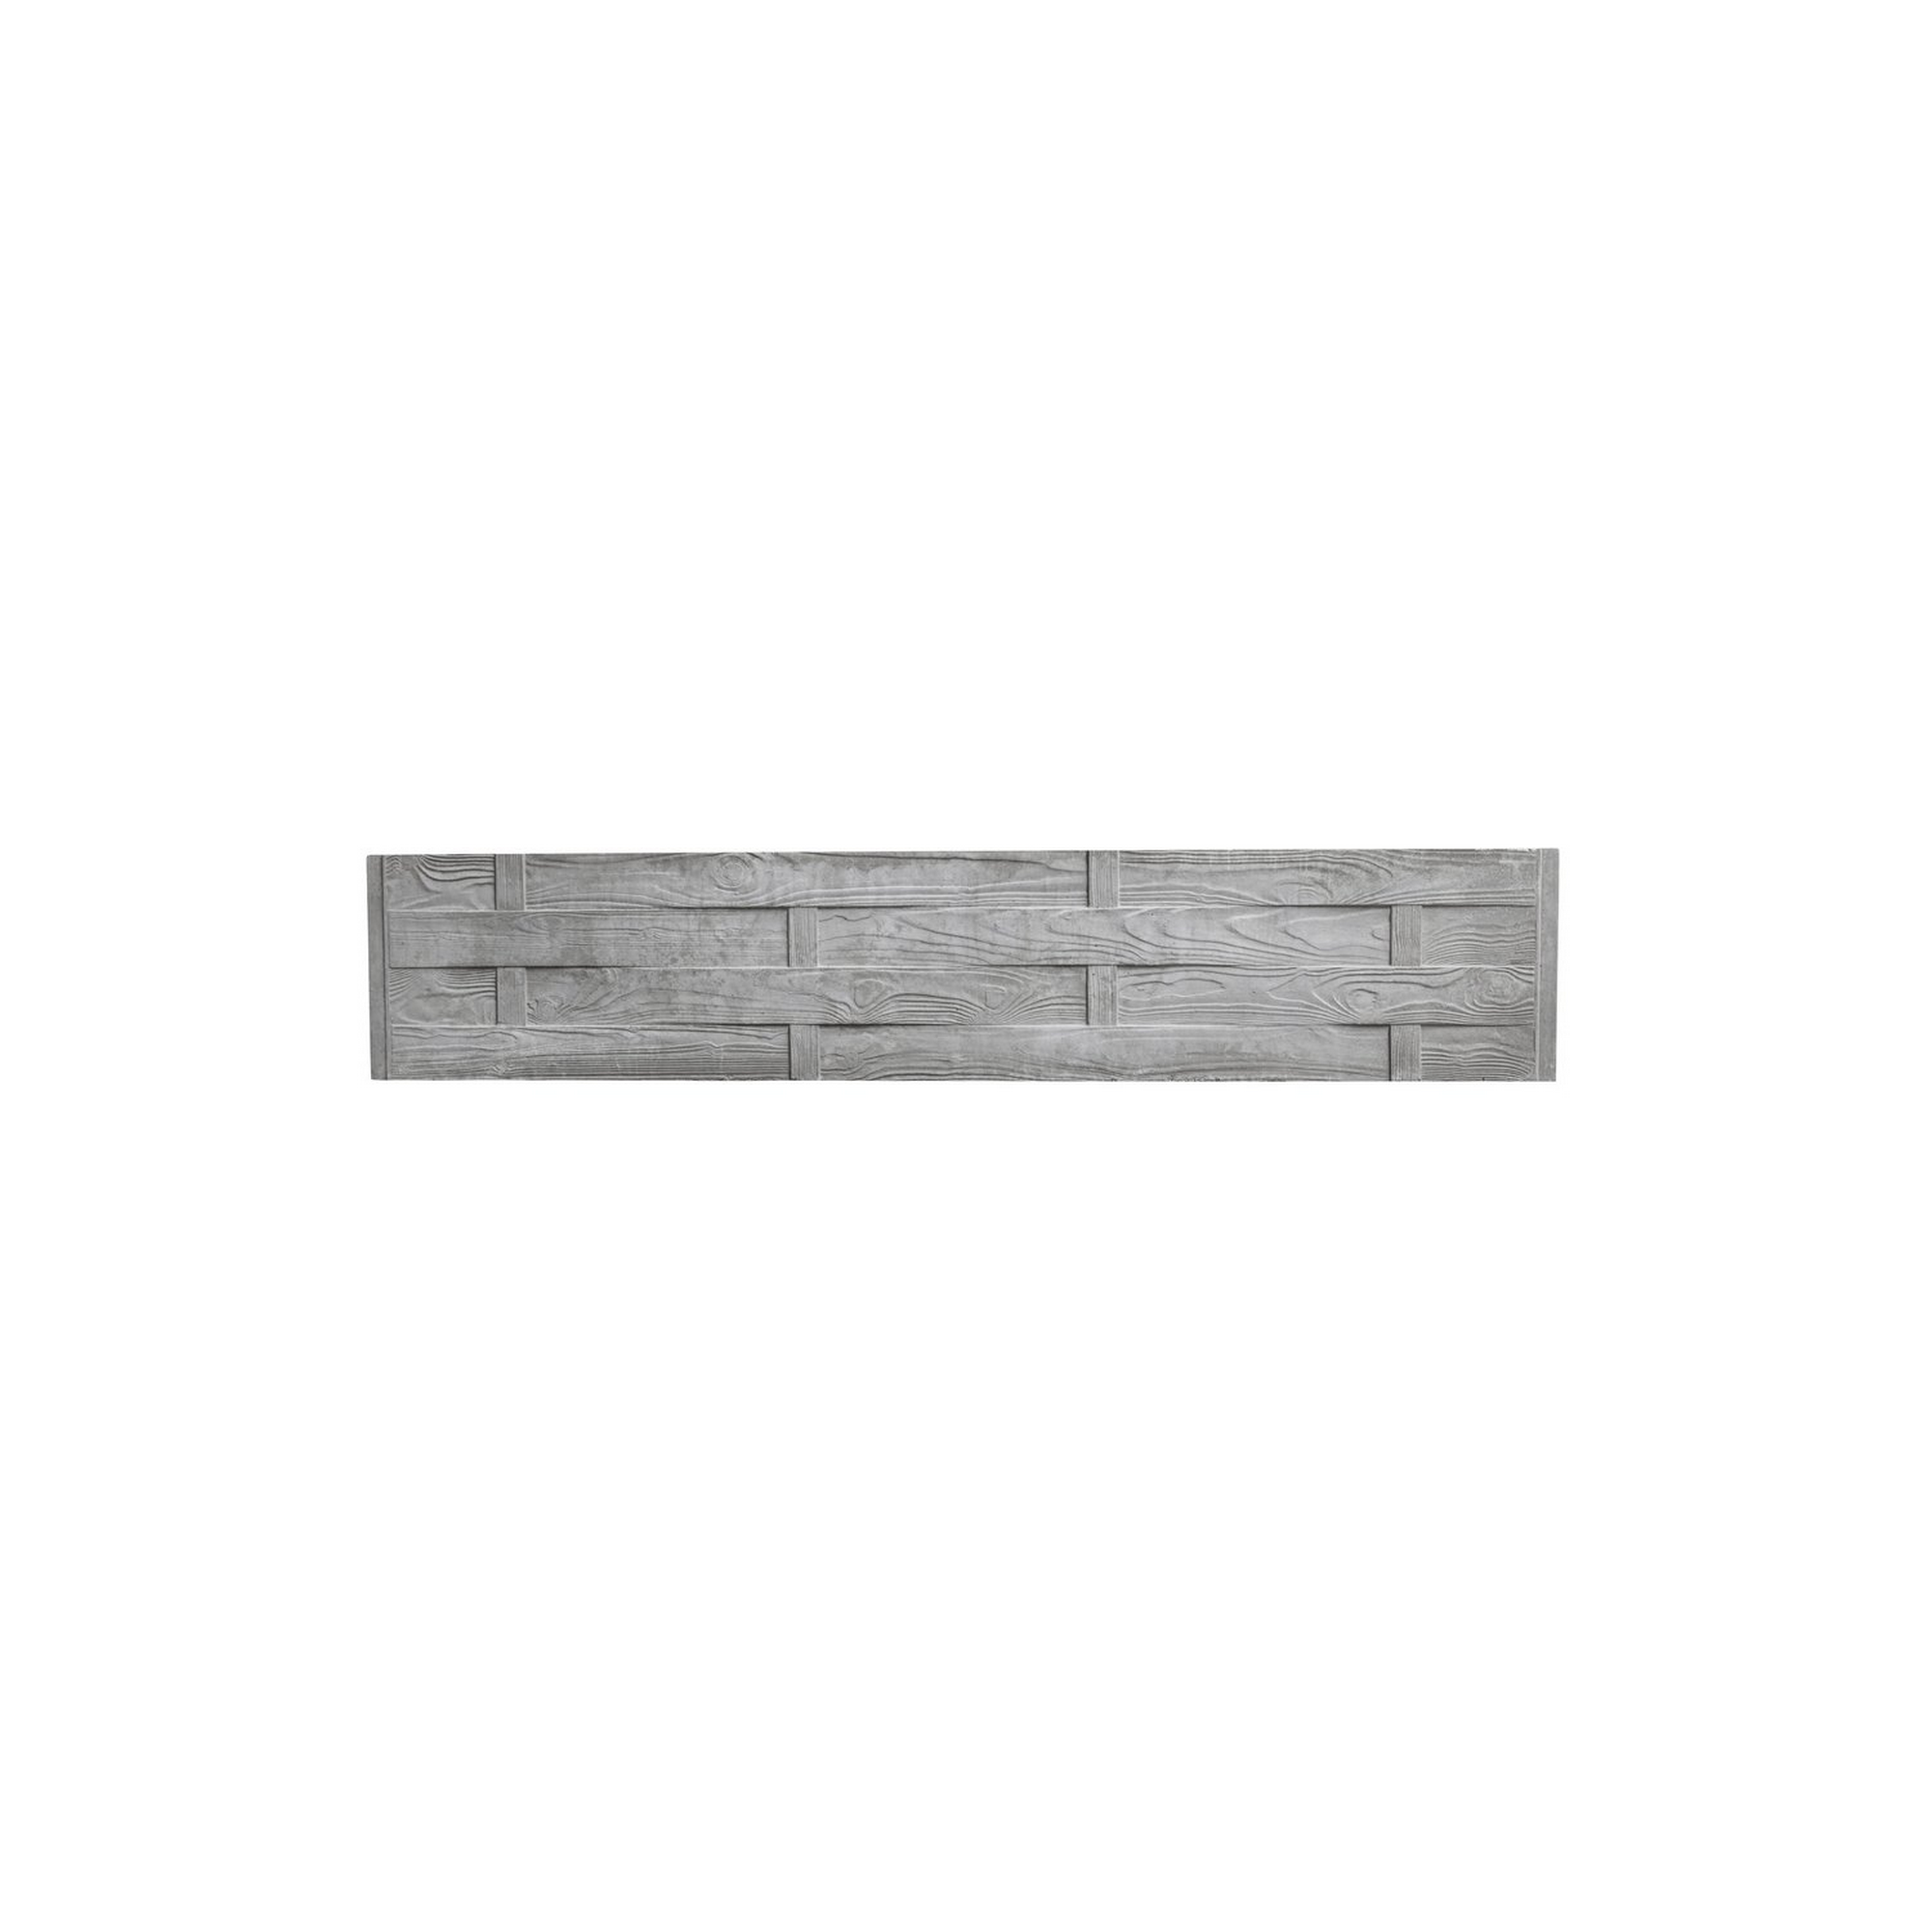 Betonzaunplatte 'Standard Flecht' 200 x 38,5 x 3,5 cm grau + product picture